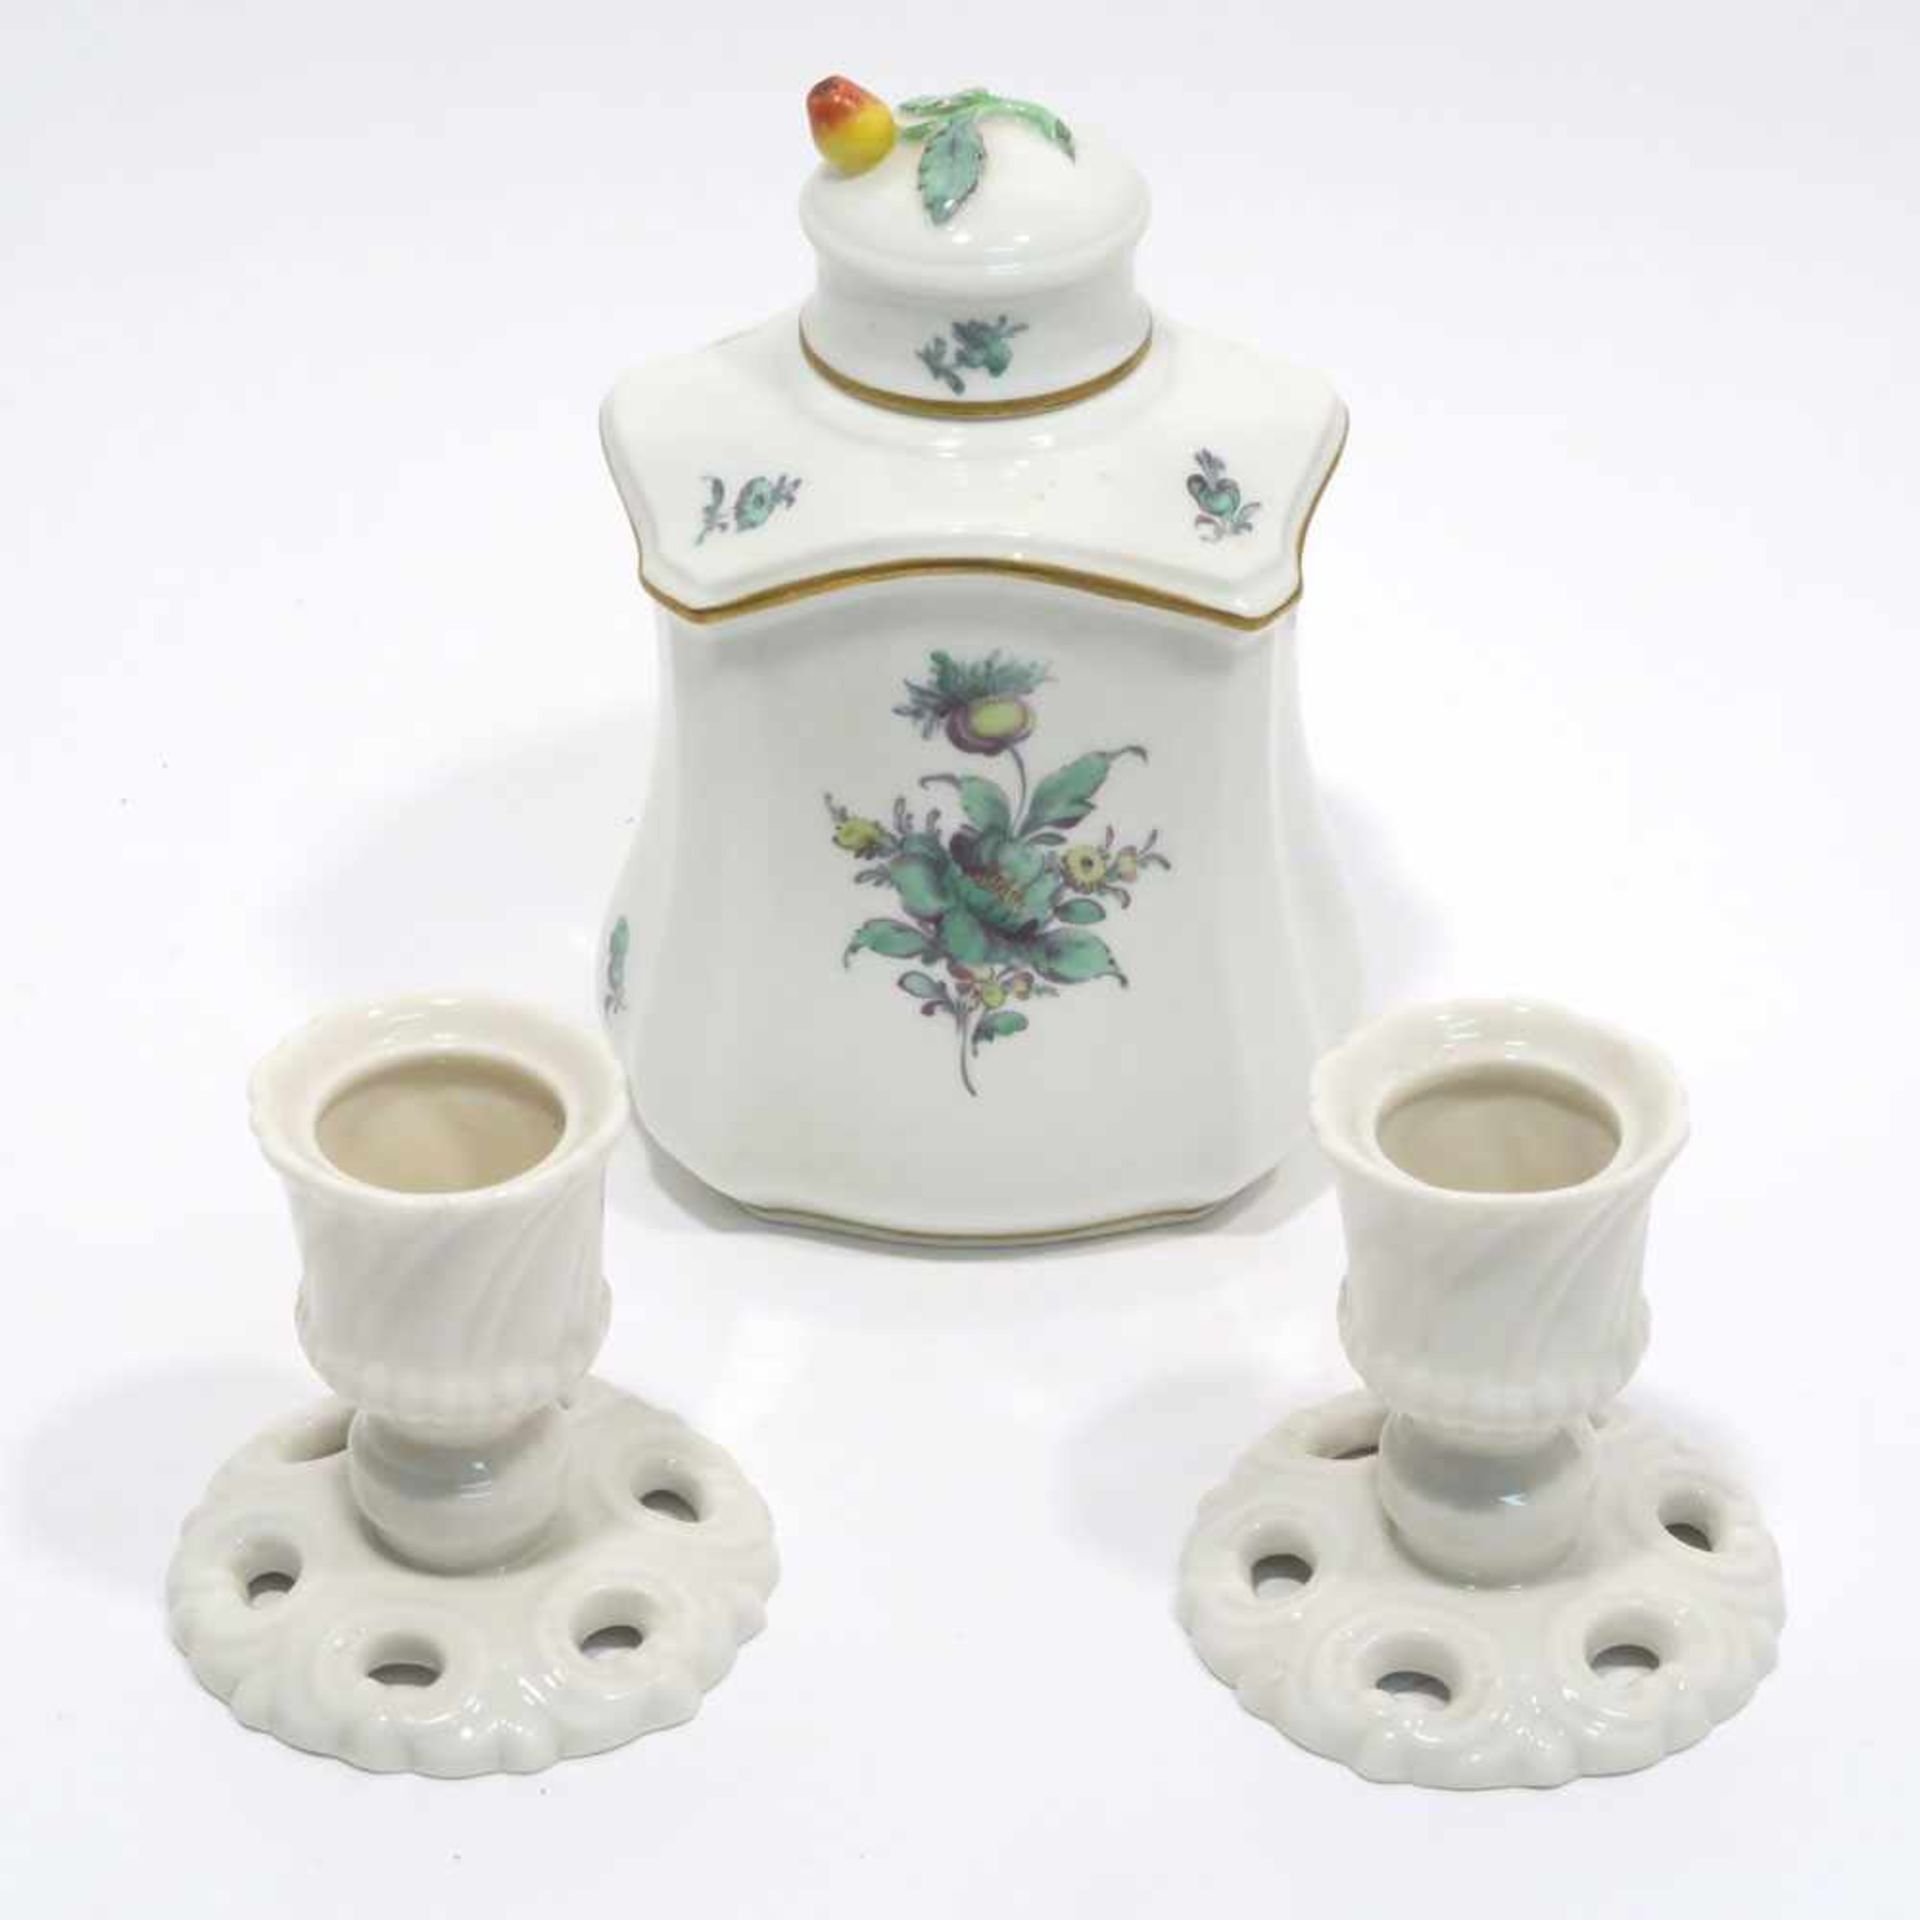 Teedose und zwei KerzenleuchterNymphenburg. Teedose in geschwungener Rechteckform mit grünem